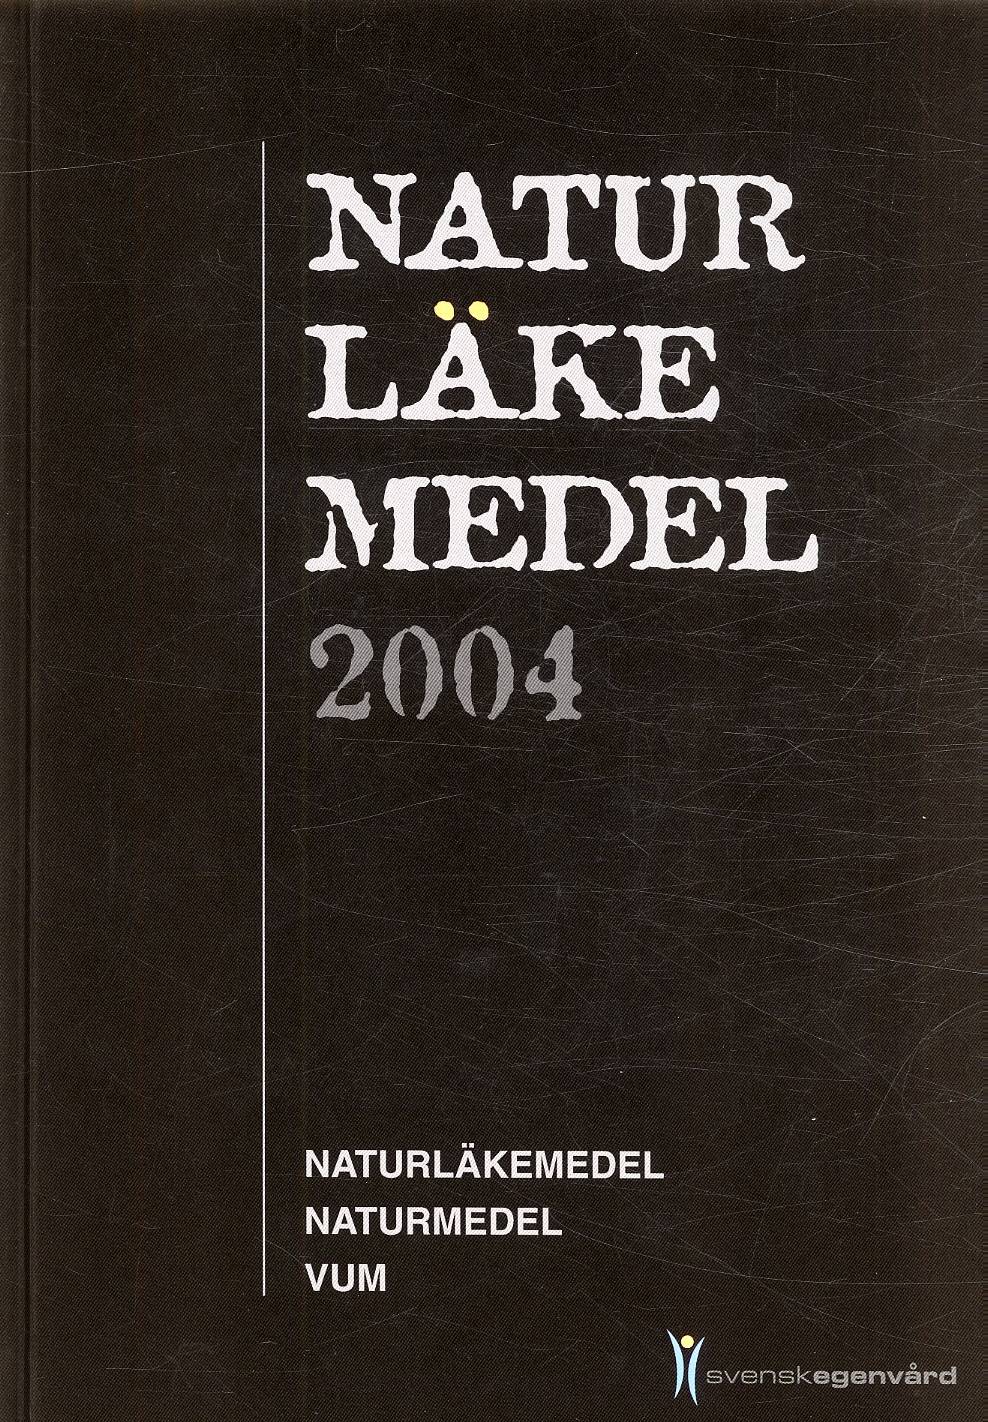 Naturläkemedel : naturläkemedel, naturmedel, VUM. 2004